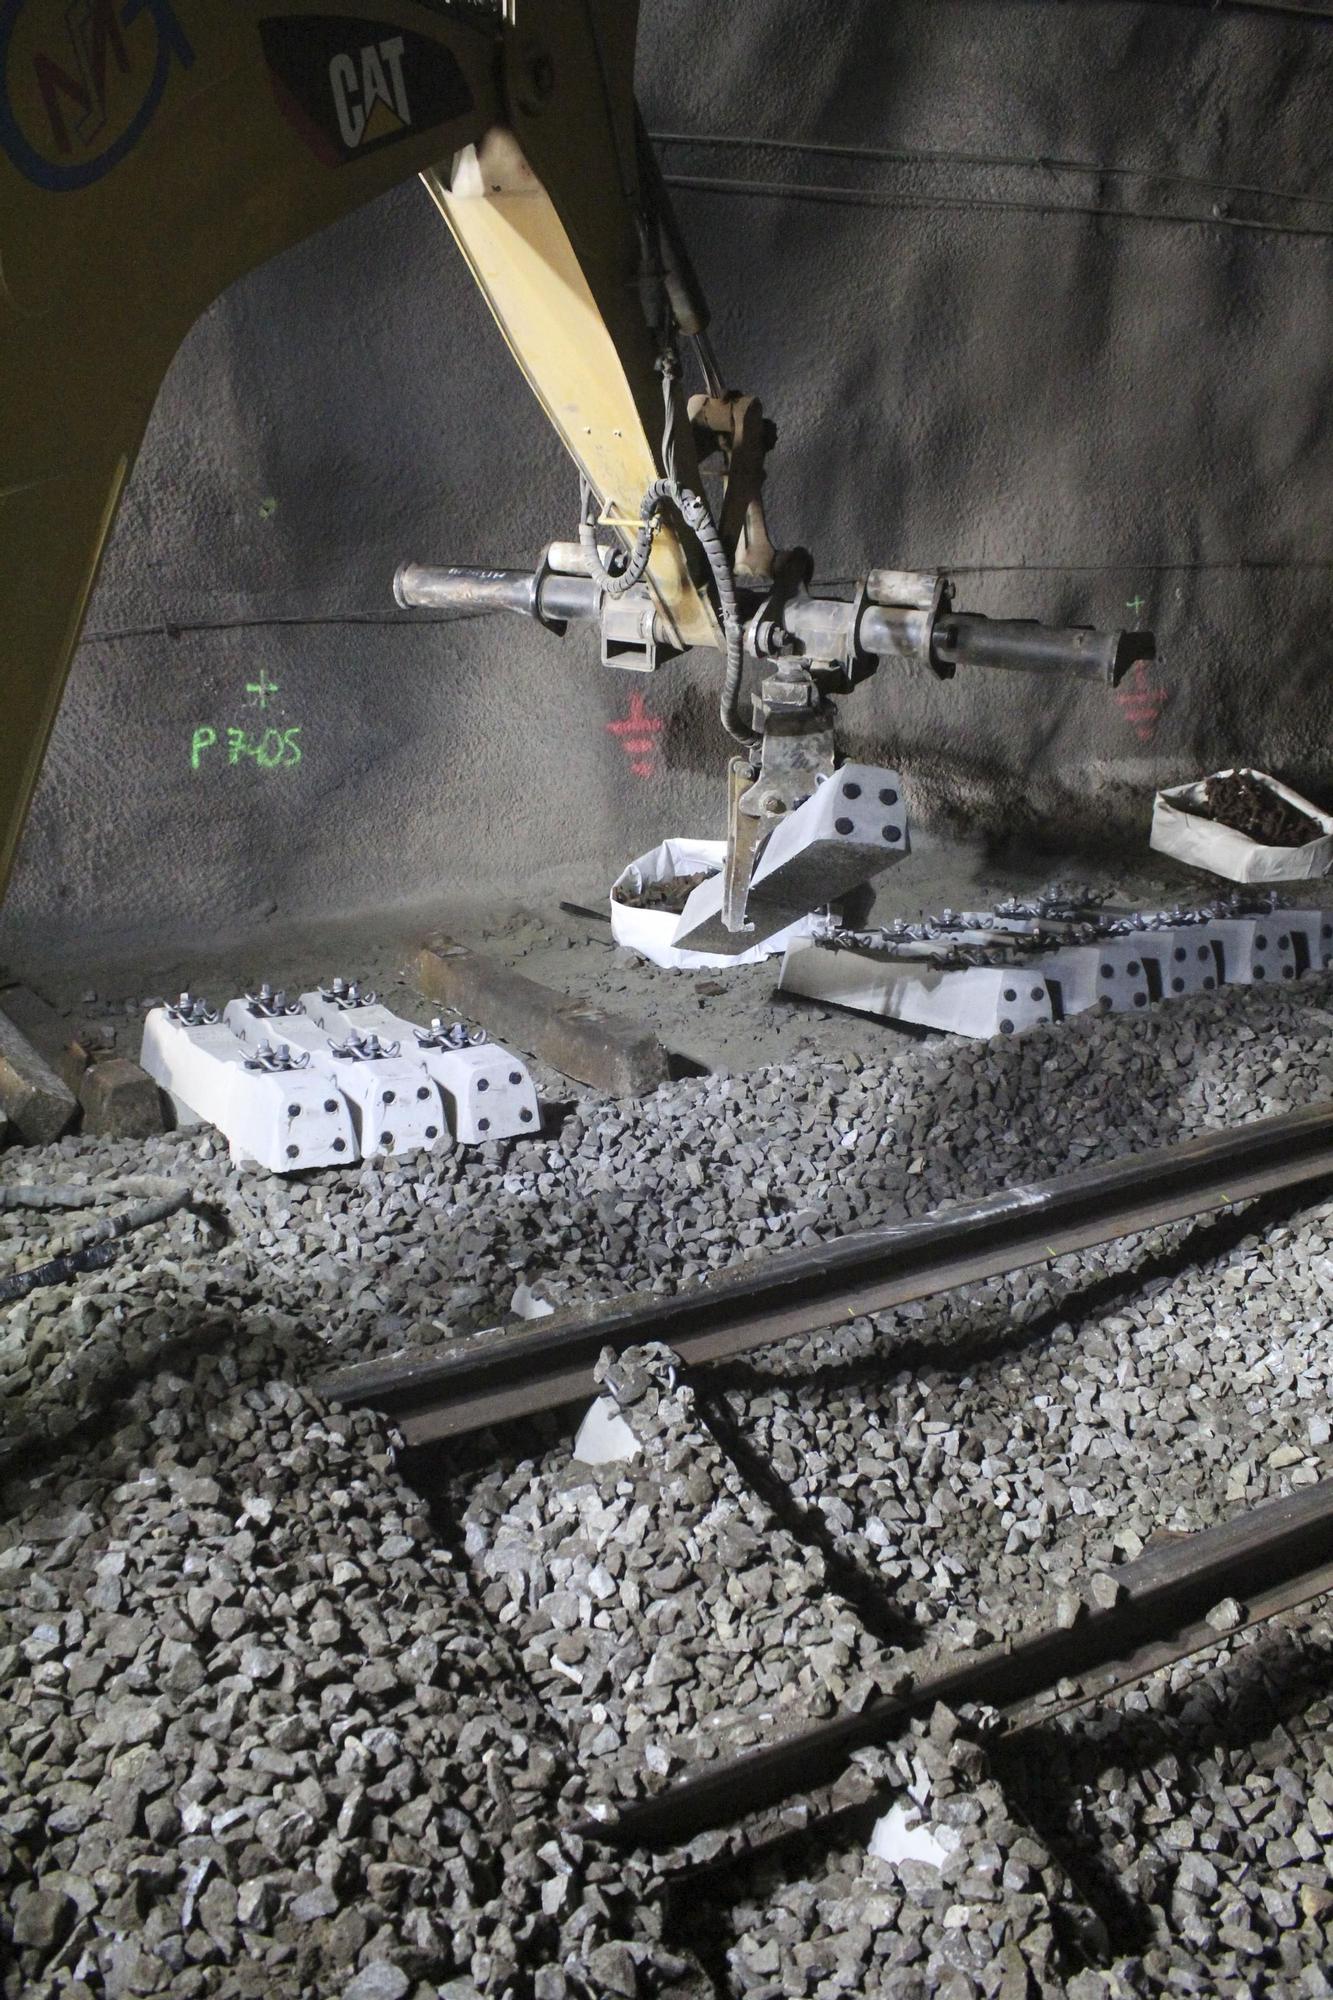 Un tram en obres de la línea de Ferrocarrils a Manresa, per l'adaptació als efectes del canvi climàtic